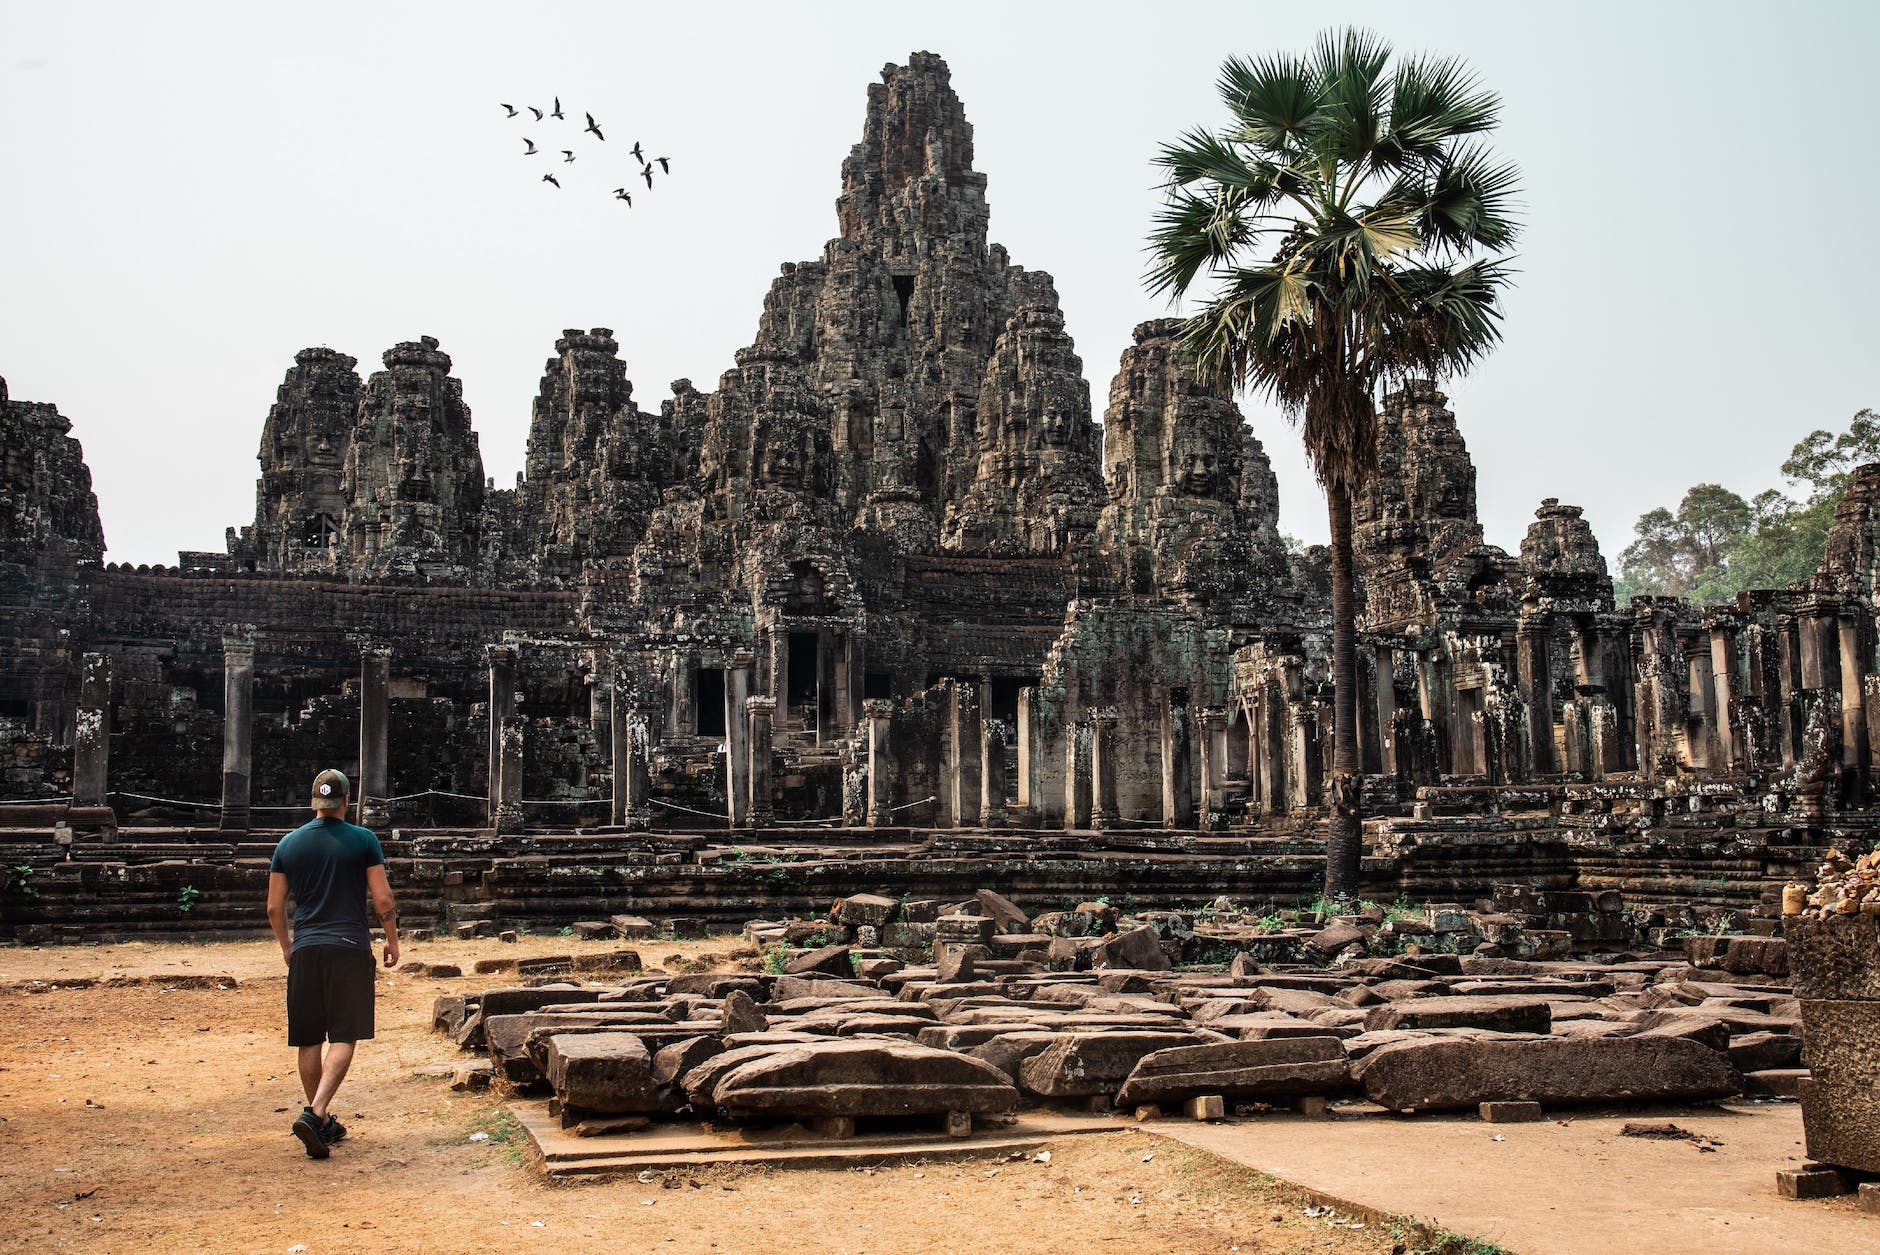 Angkor Wat: